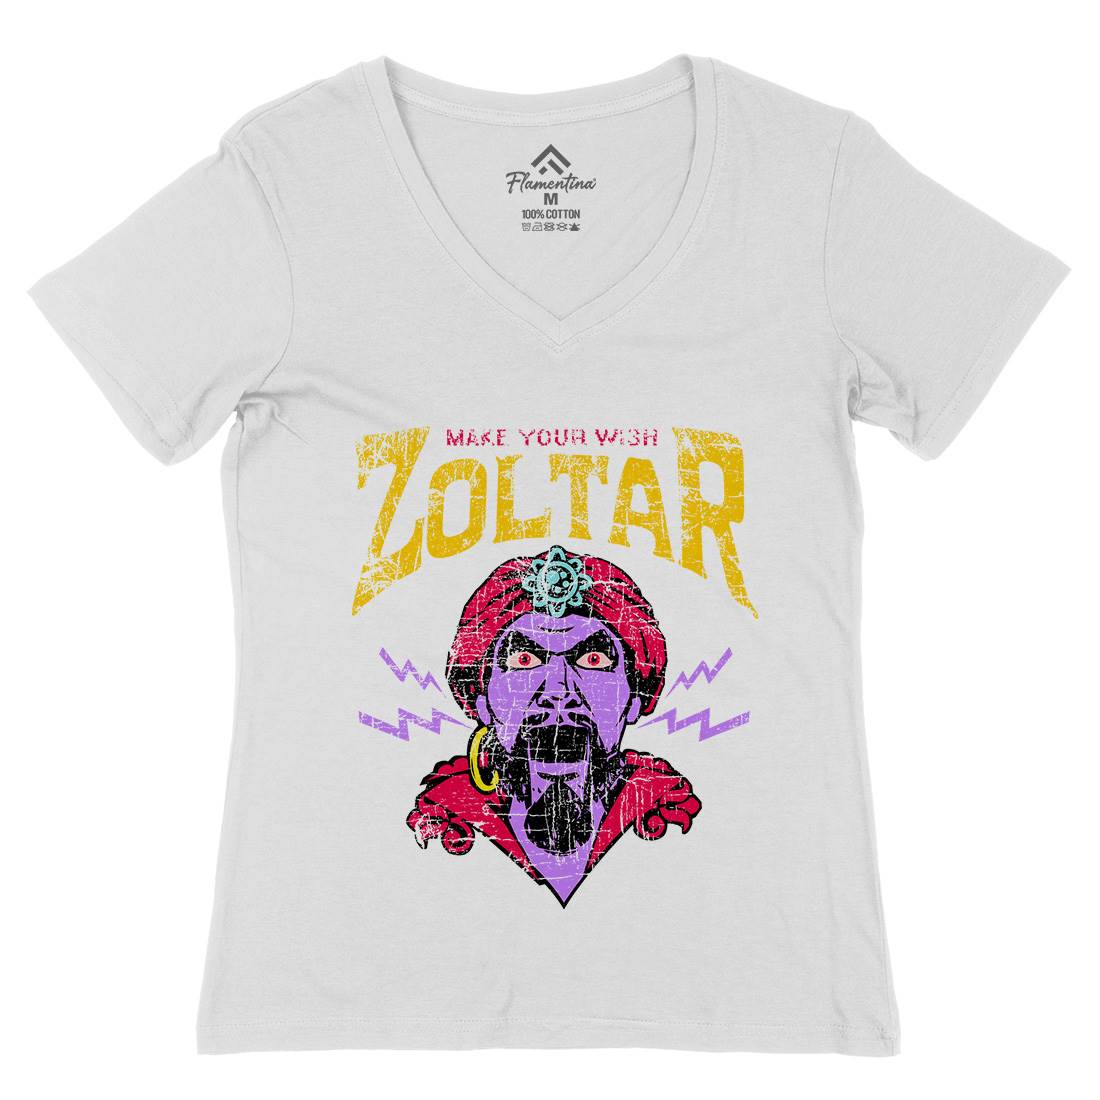 Zoltar Womens Organic V-Neck T-Shirt Retro D272